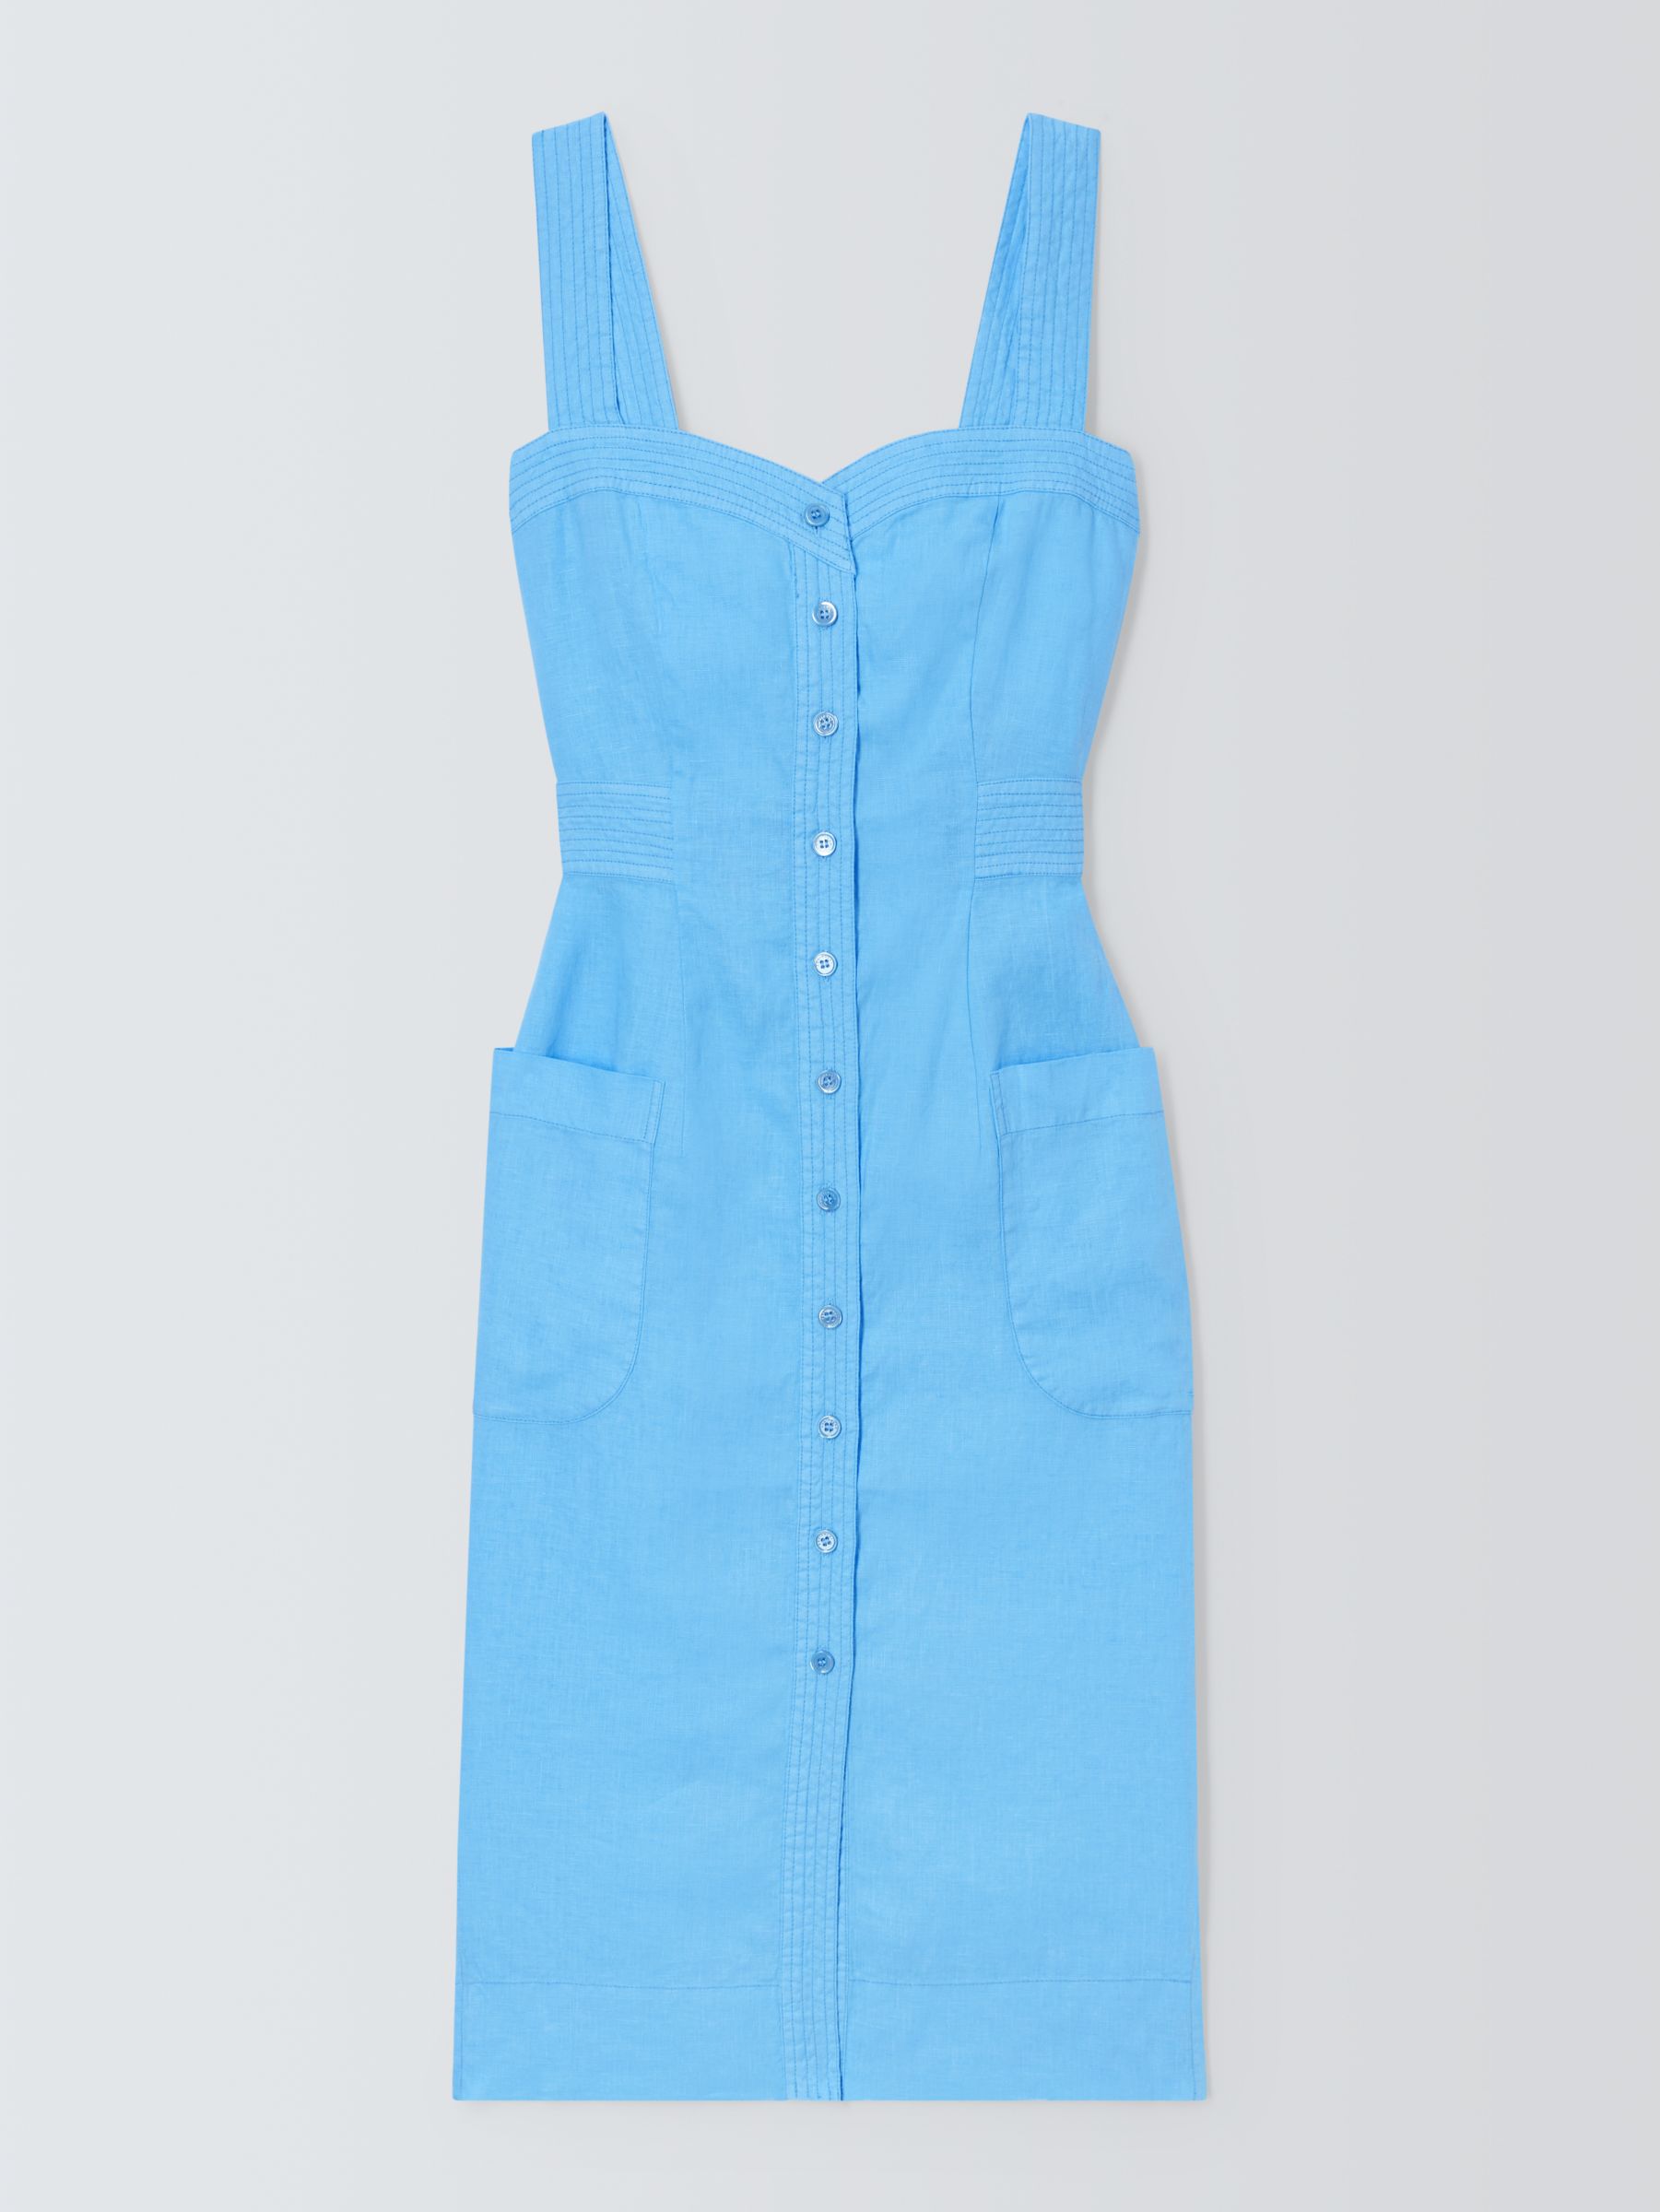 Equipment Josefina Linen Dress, Blue, S